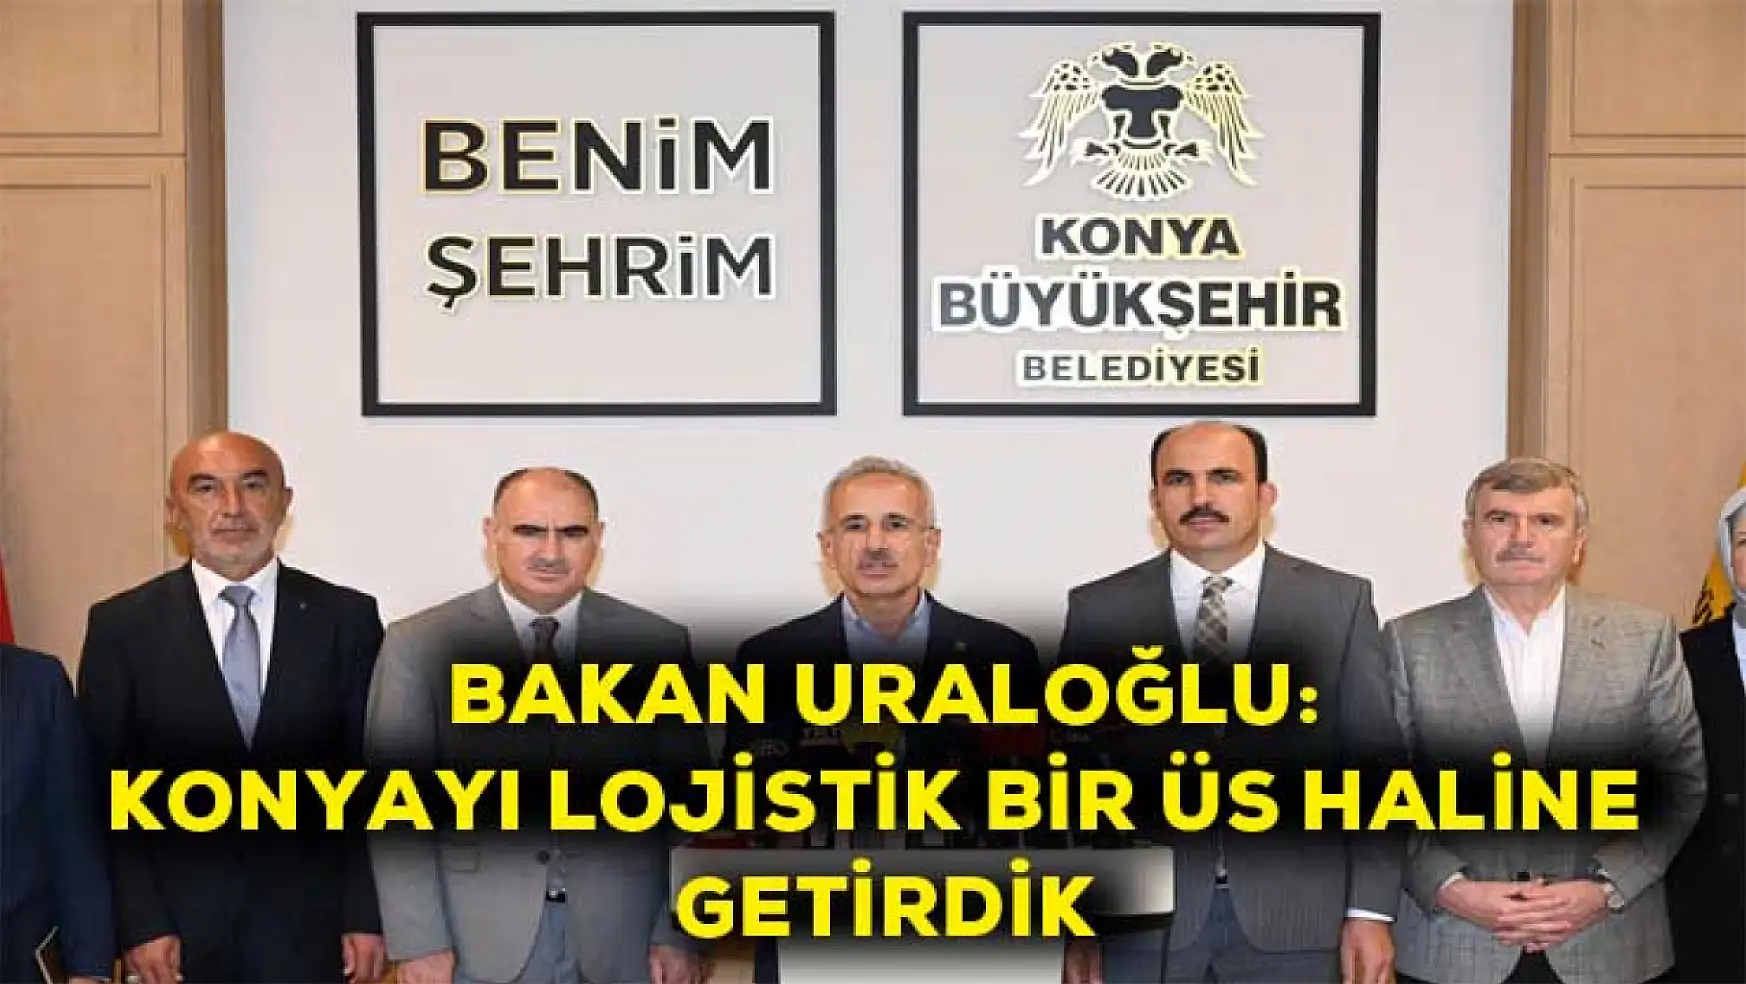 Bakan Uraloğlu: Konyayı lojistik bir üs haline getirdik